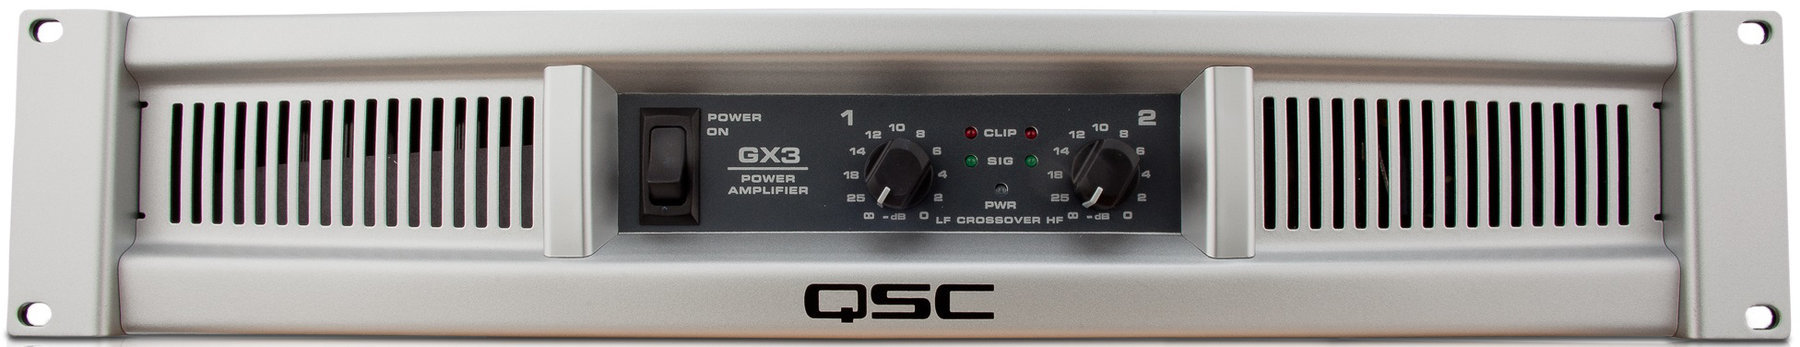 Effektforstærker QSC GX3 Effektforstærker